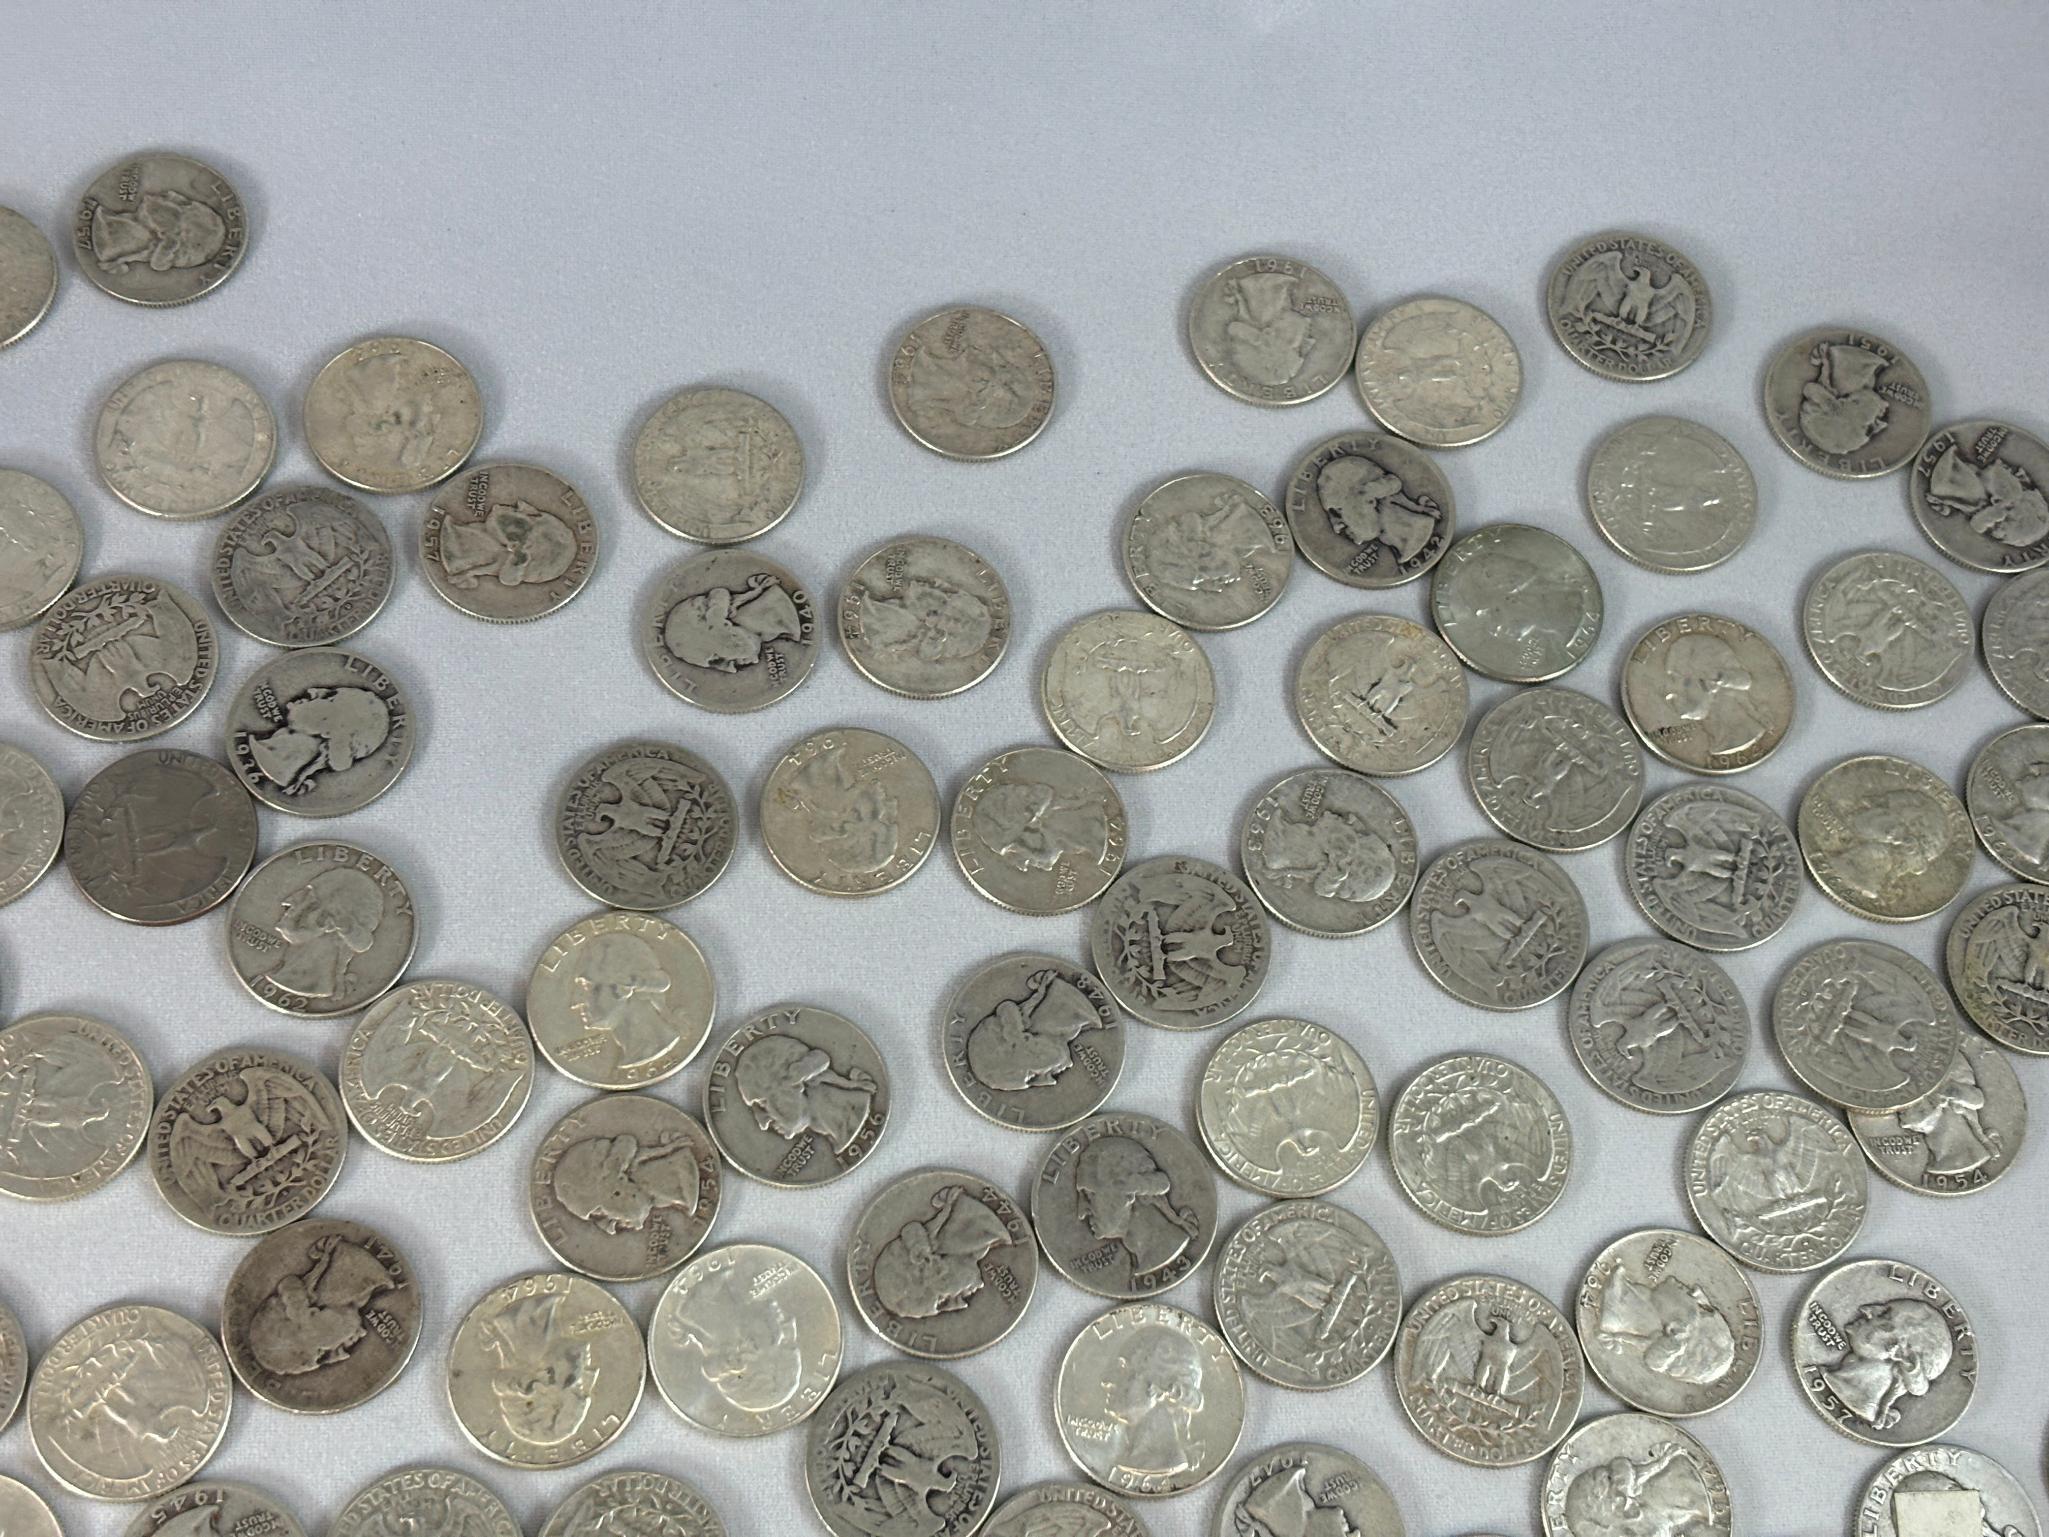 Huge Lot of 348 Silver US Quarter Coins